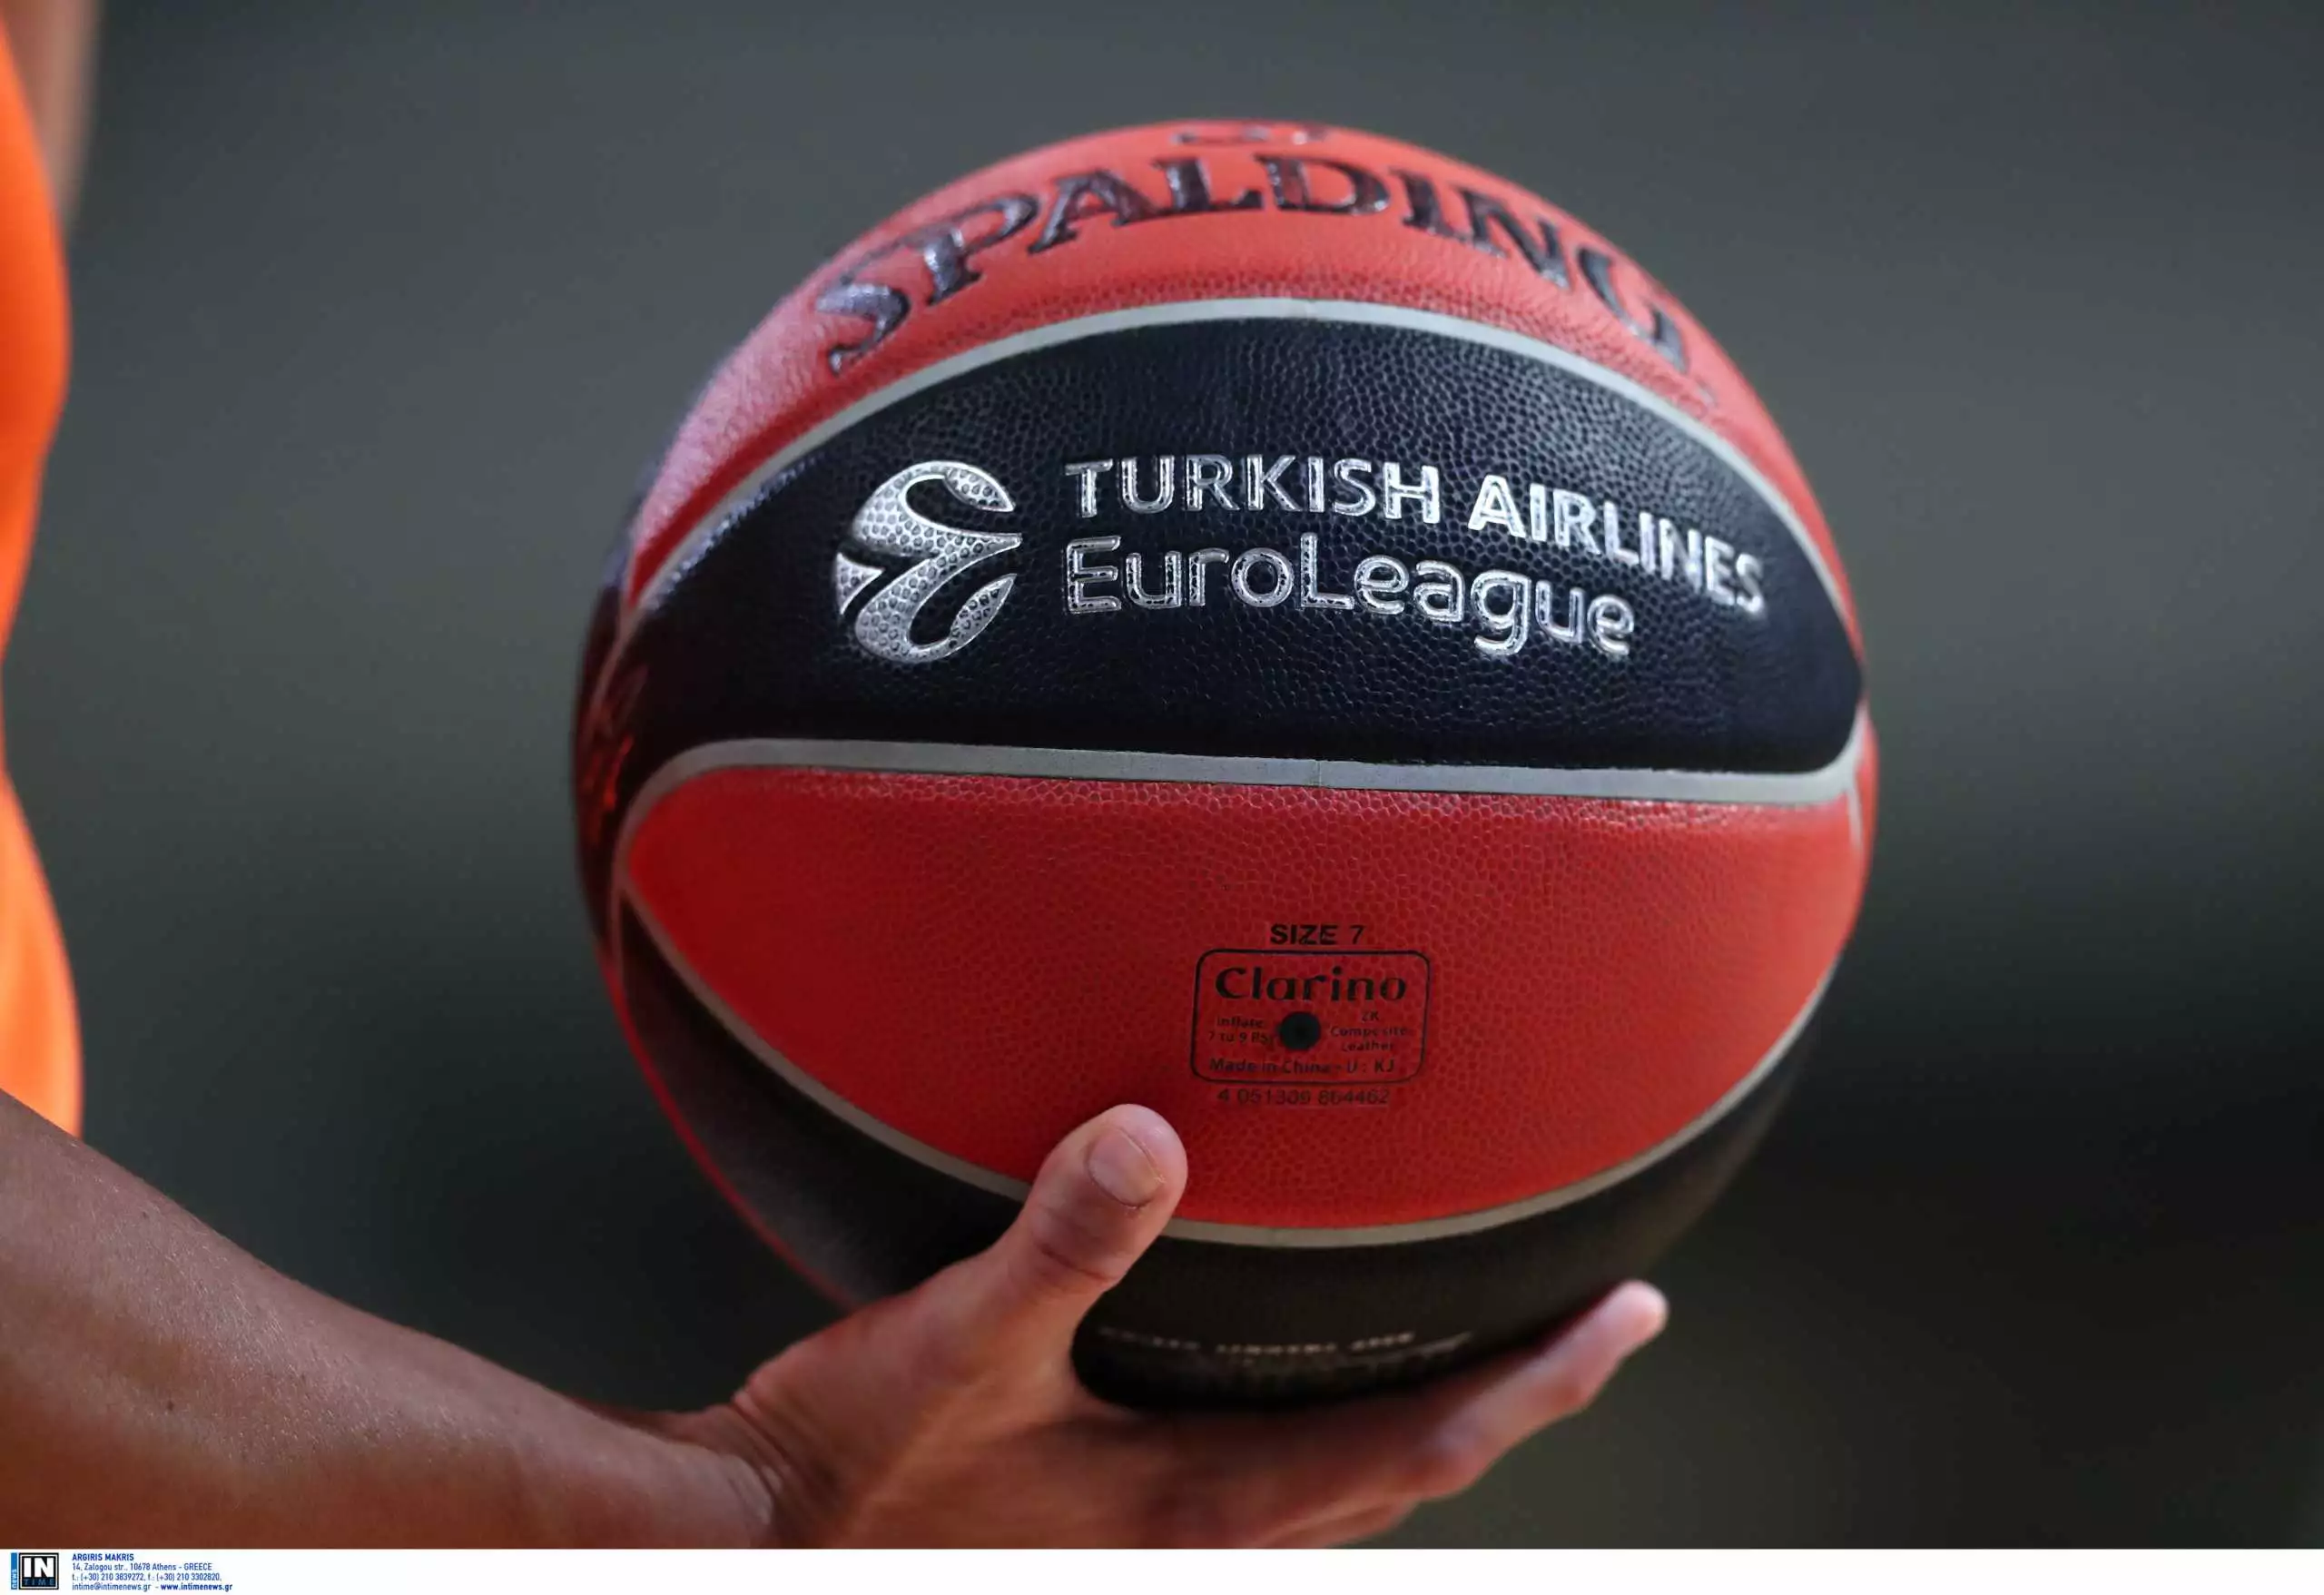 Βαθμολογία Euroleague: Σε ποια θέση βρίσκεται ο Ολυμπιακός;